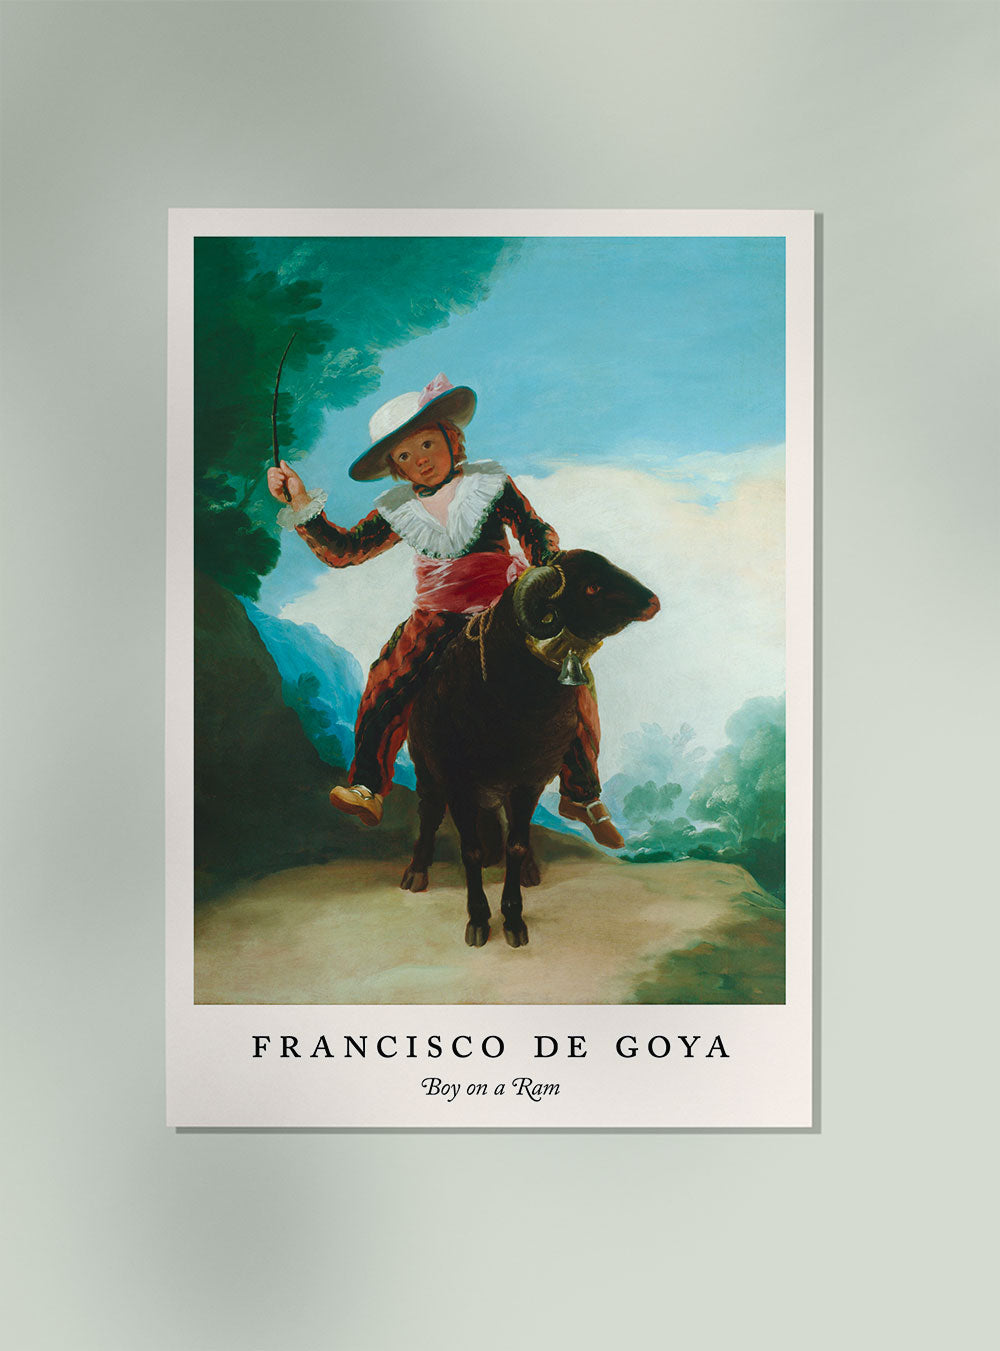 Boy on a Ram by Francisco de Goya